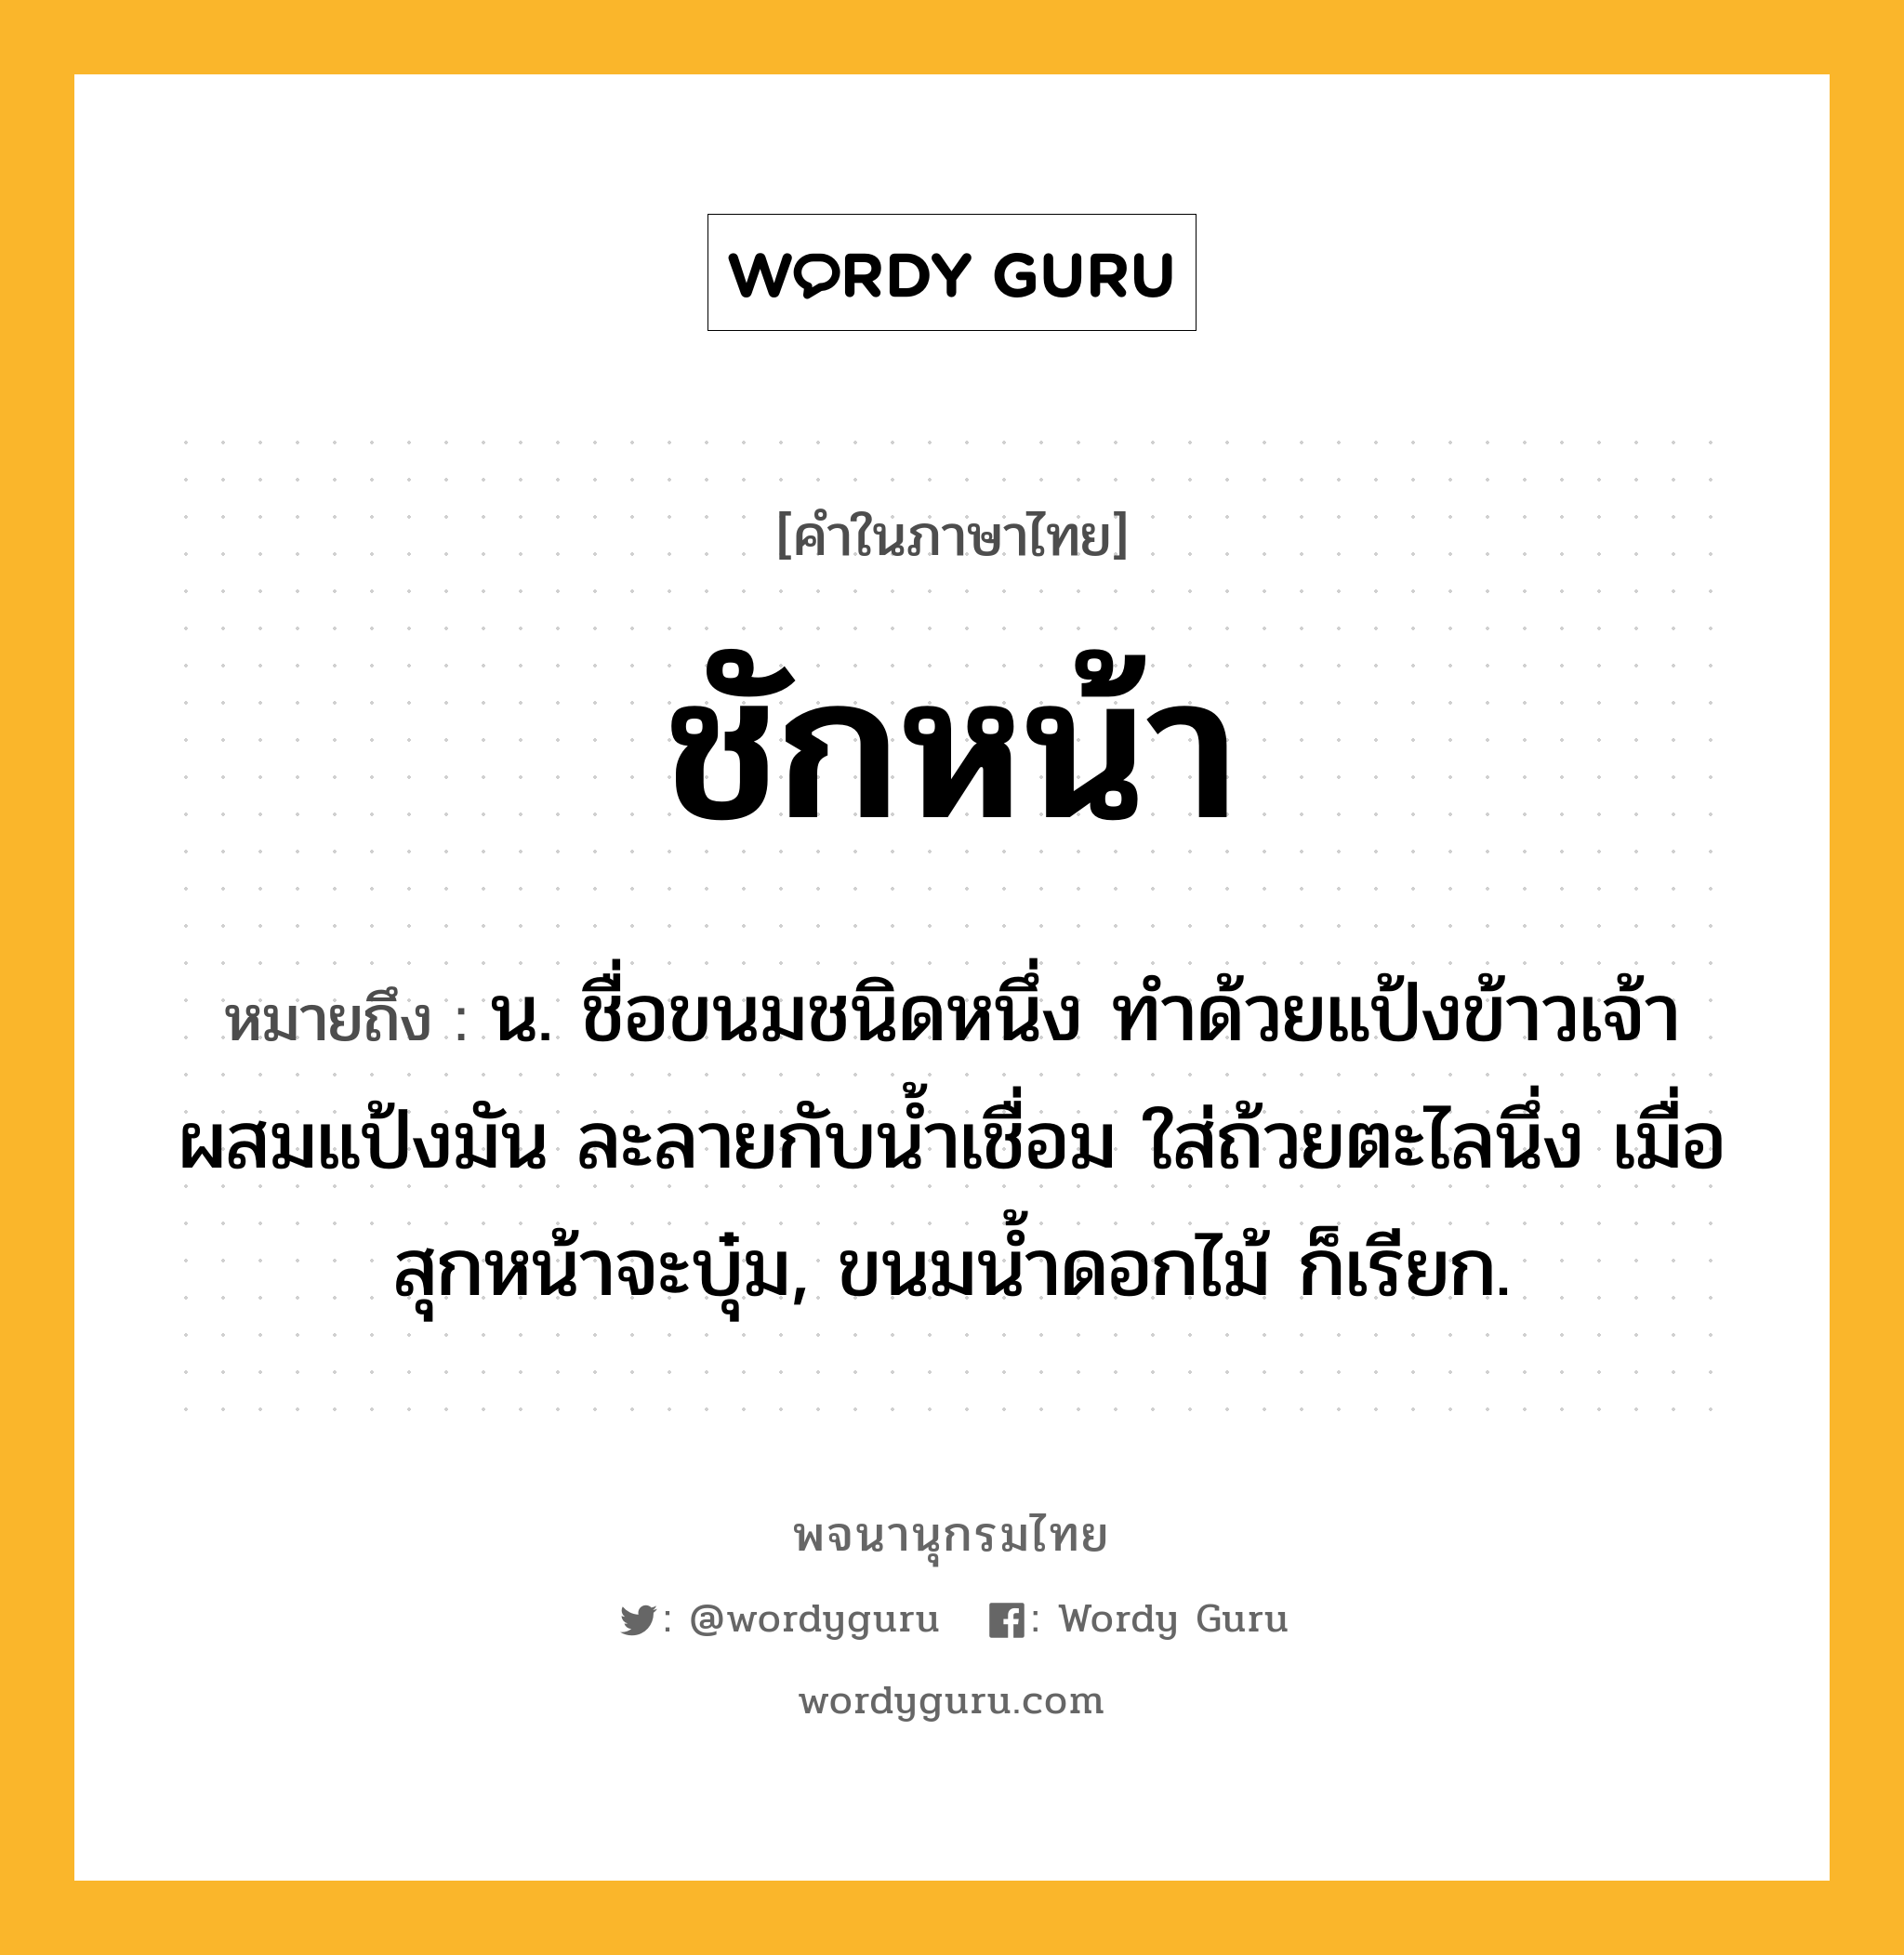 ชักหน้า ความหมาย หมายถึงอะไร?, คำในภาษาไทย ชักหน้า หมายถึง น. ชื่อขนมชนิดหนึ่ง ทําด้วยแป้งข้าวเจ้าผสมแป้งมัน ละลายกับนํ้าเชื่อม ใส่ถ้วยตะไลนึ่ง เมื่อสุกหน้าจะบุ๋ม, ขนมนํ้าดอกไม้ ก็เรียก.